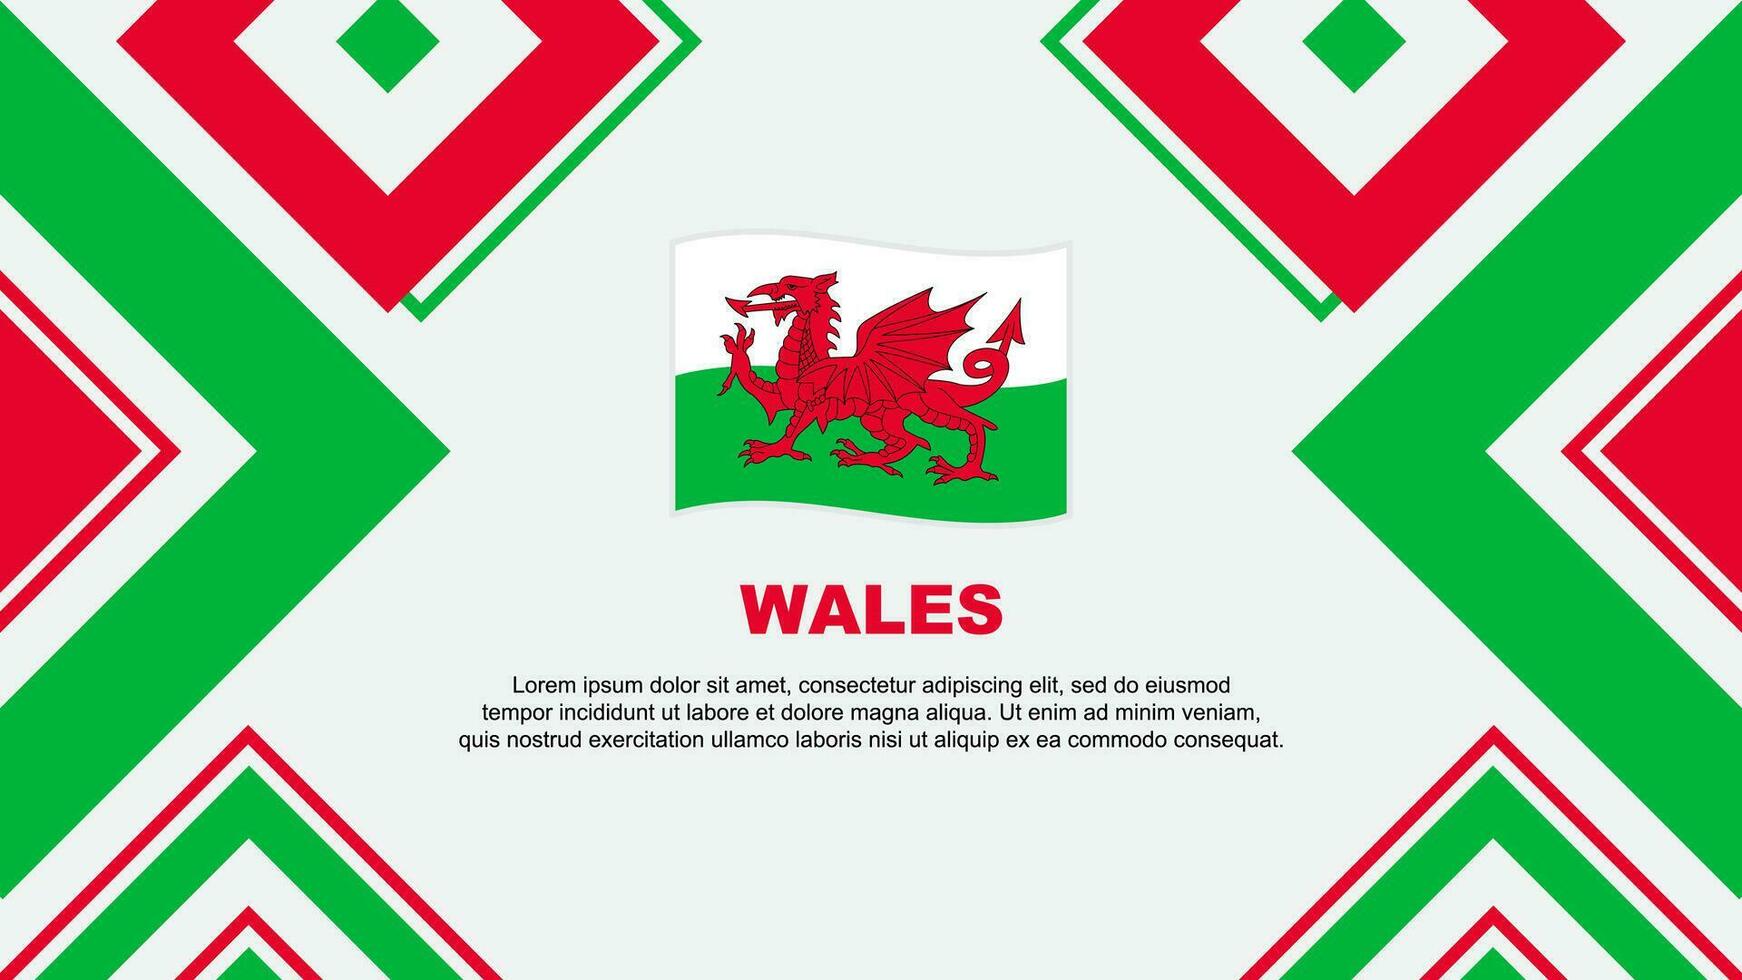 Wales vlag abstract achtergrond ontwerp sjabloon. Wales onafhankelijkheid dag banier behang vector illustratie. Wales onafhankelijkheid dag